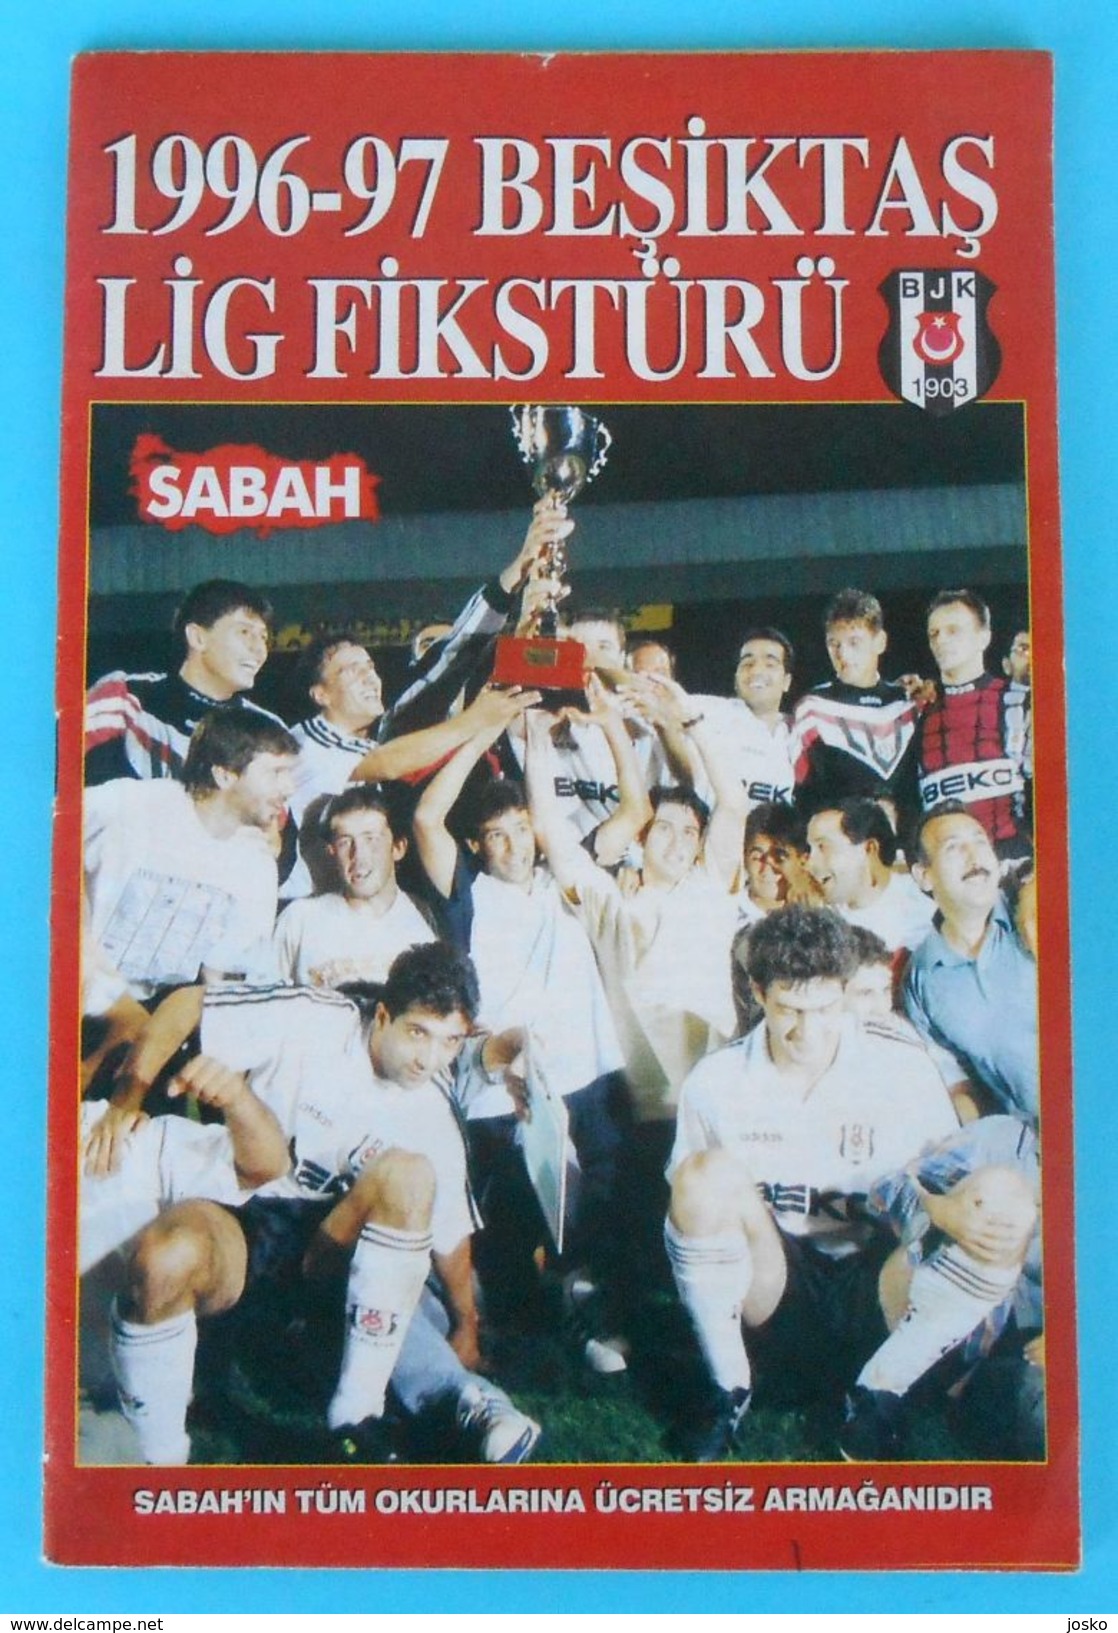 BESIKTAS JK - 1996/97. Lig Fiksturu Football Programme & Guide * Soccer Fussball Programm Turkey Turquie Türkei Turquia - Bücher